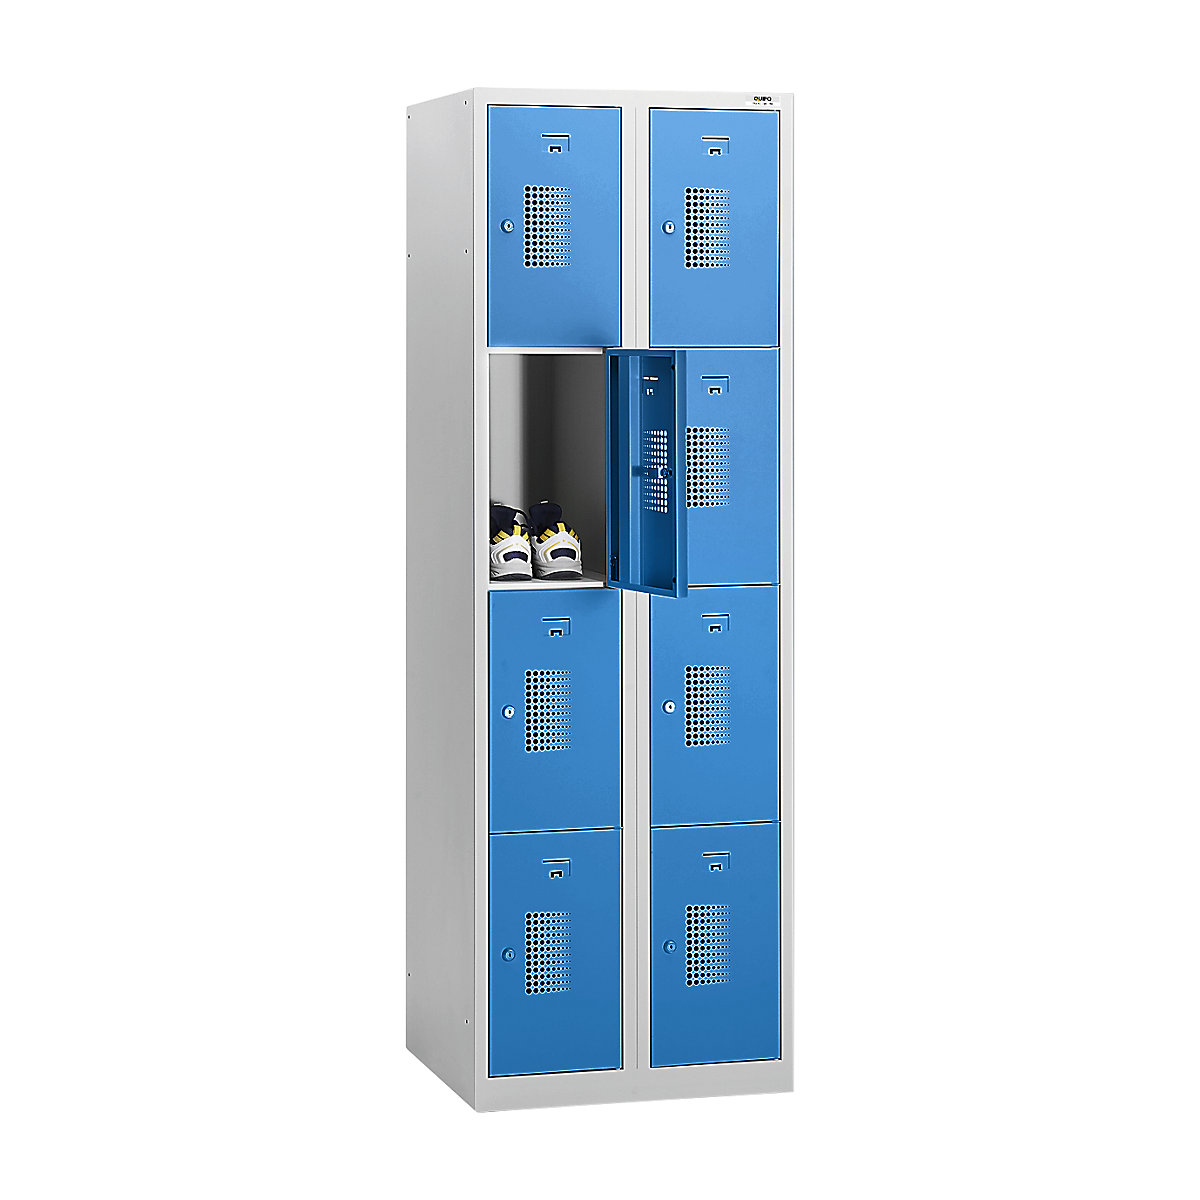 Omara s predelki z zaklepanjem AMSTERDAM – eurokraft basic, 2 razdelka, širina 800 mm, 8 predelkov, cilindrična ključavnica, korpus svetlo siv, vrata svetlo modra-26